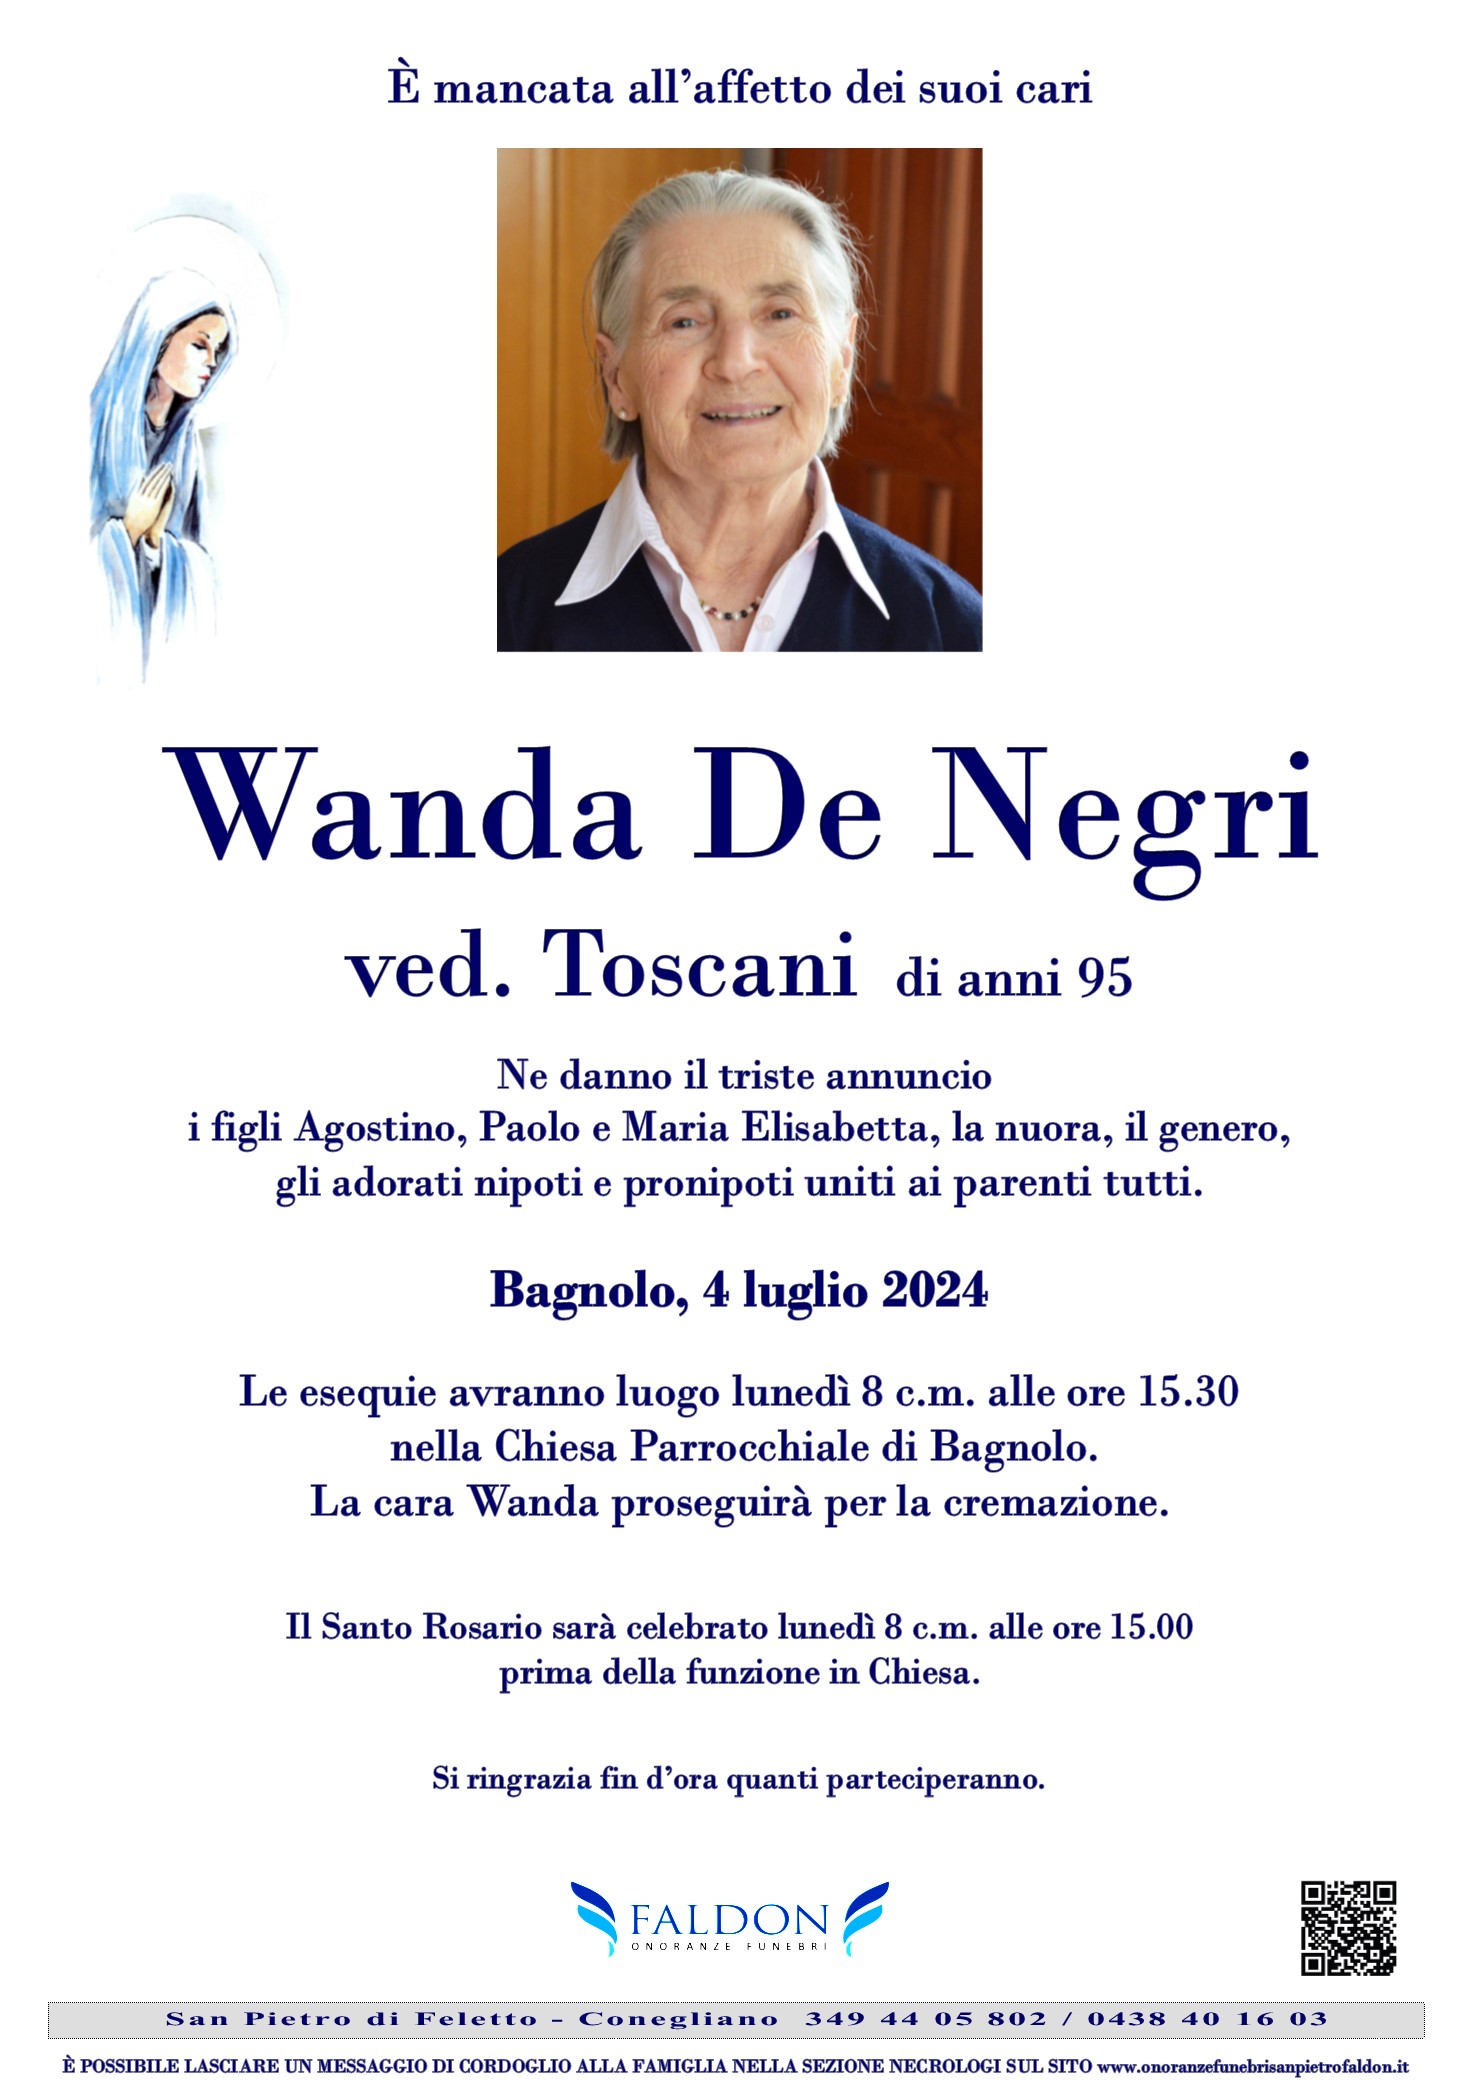 Wanda De Negri